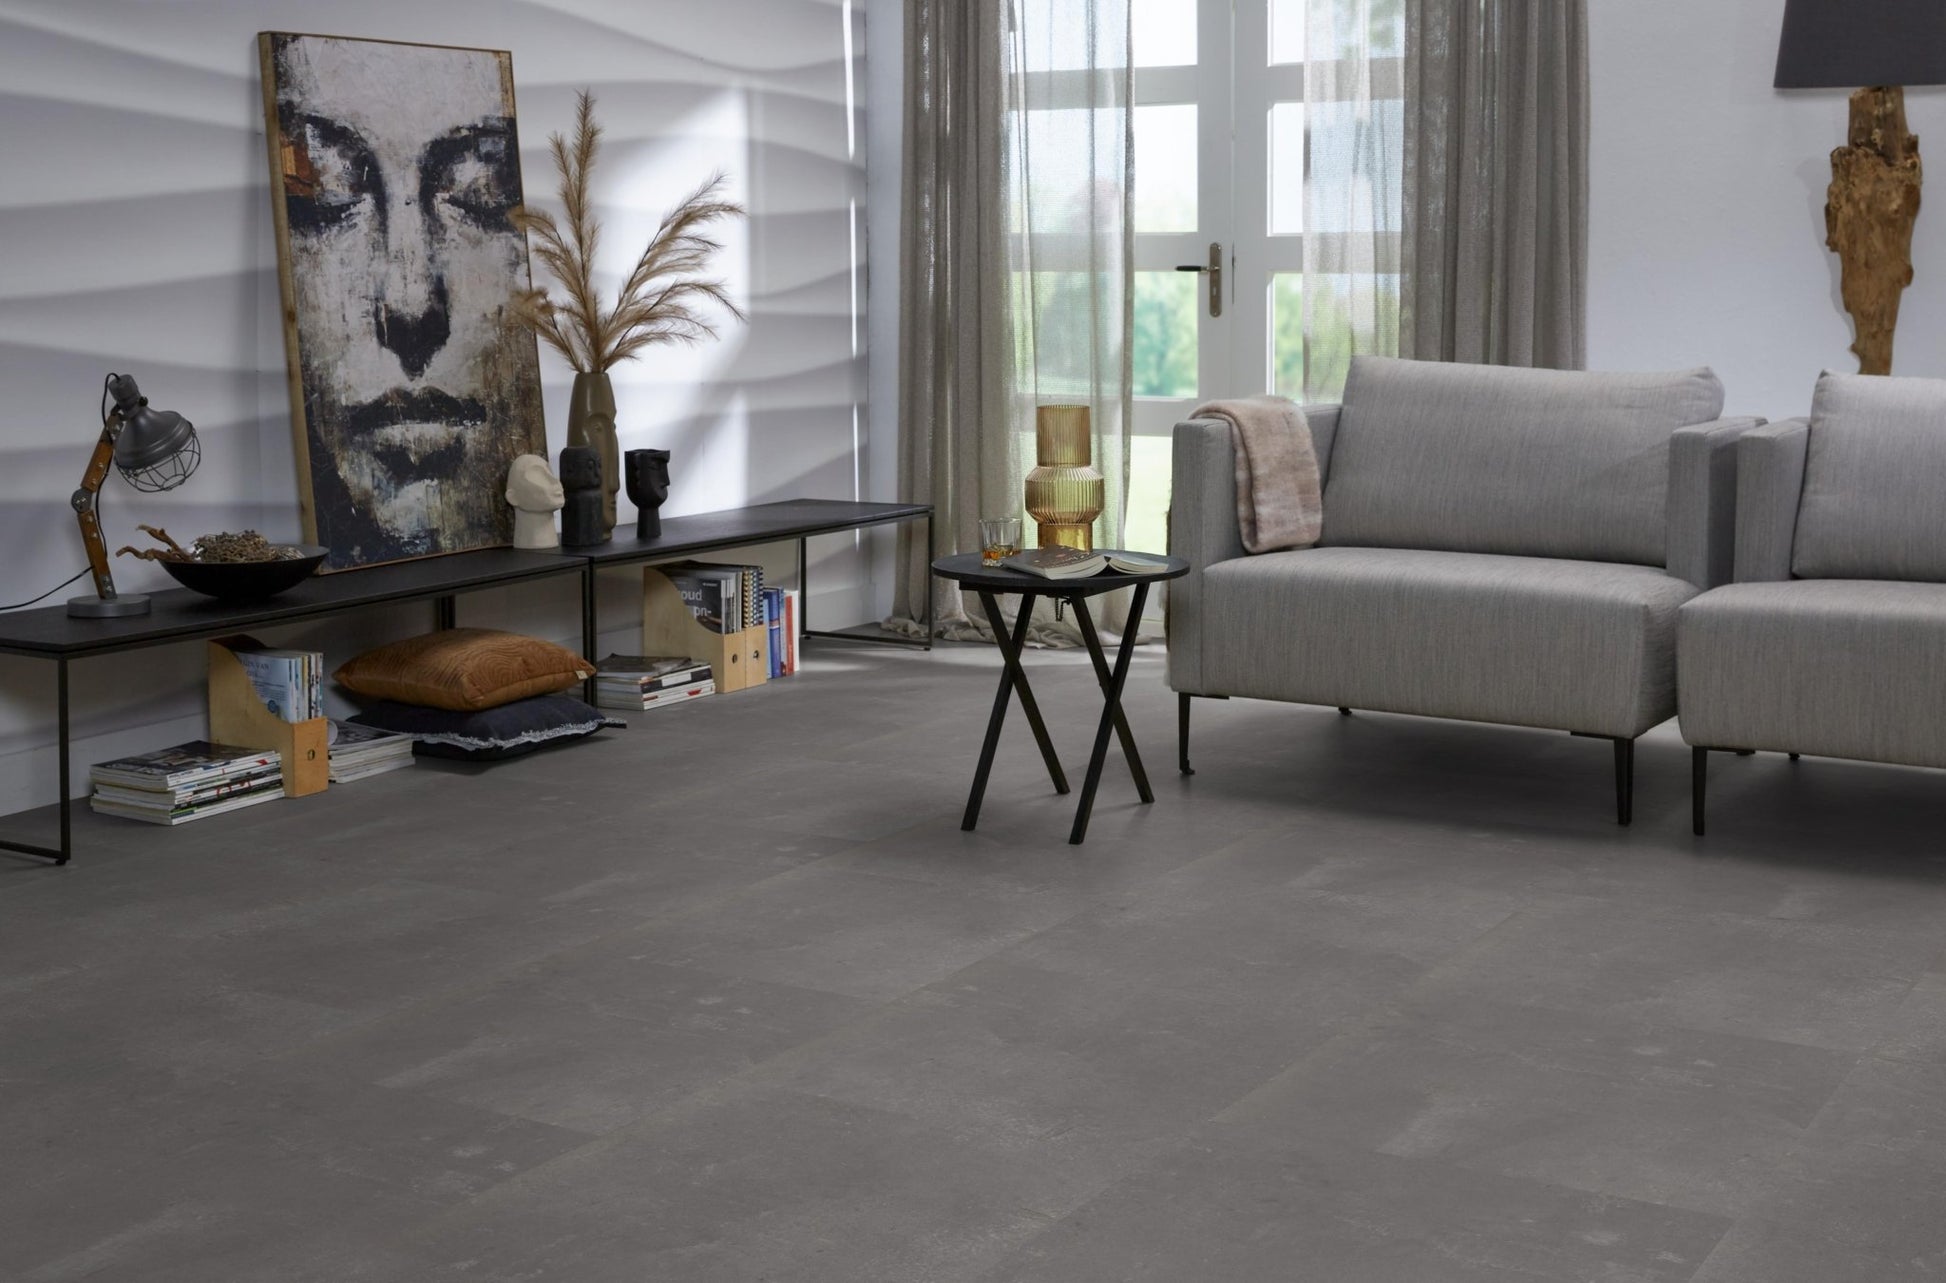 Floorlife Westminster Dark Grey 5203 Tegel Dryback PVC - Natuursteen look 61x61 cm - Solza.nl